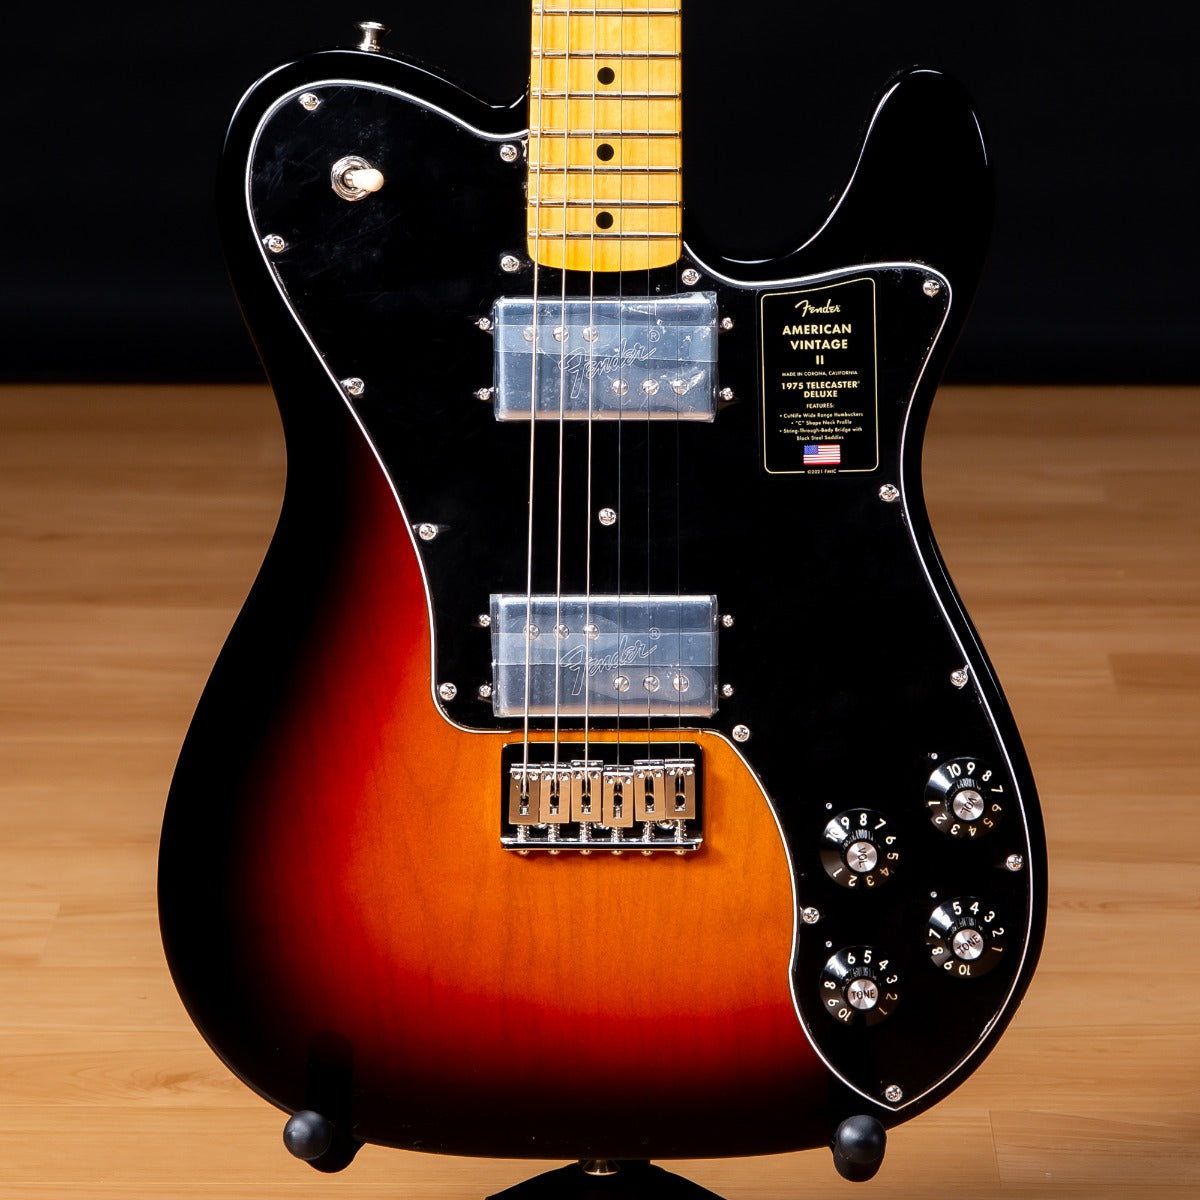 Fender American Vintage II 1975 Telecaster Deluxe - 3-Color Sunburst SN  V12261